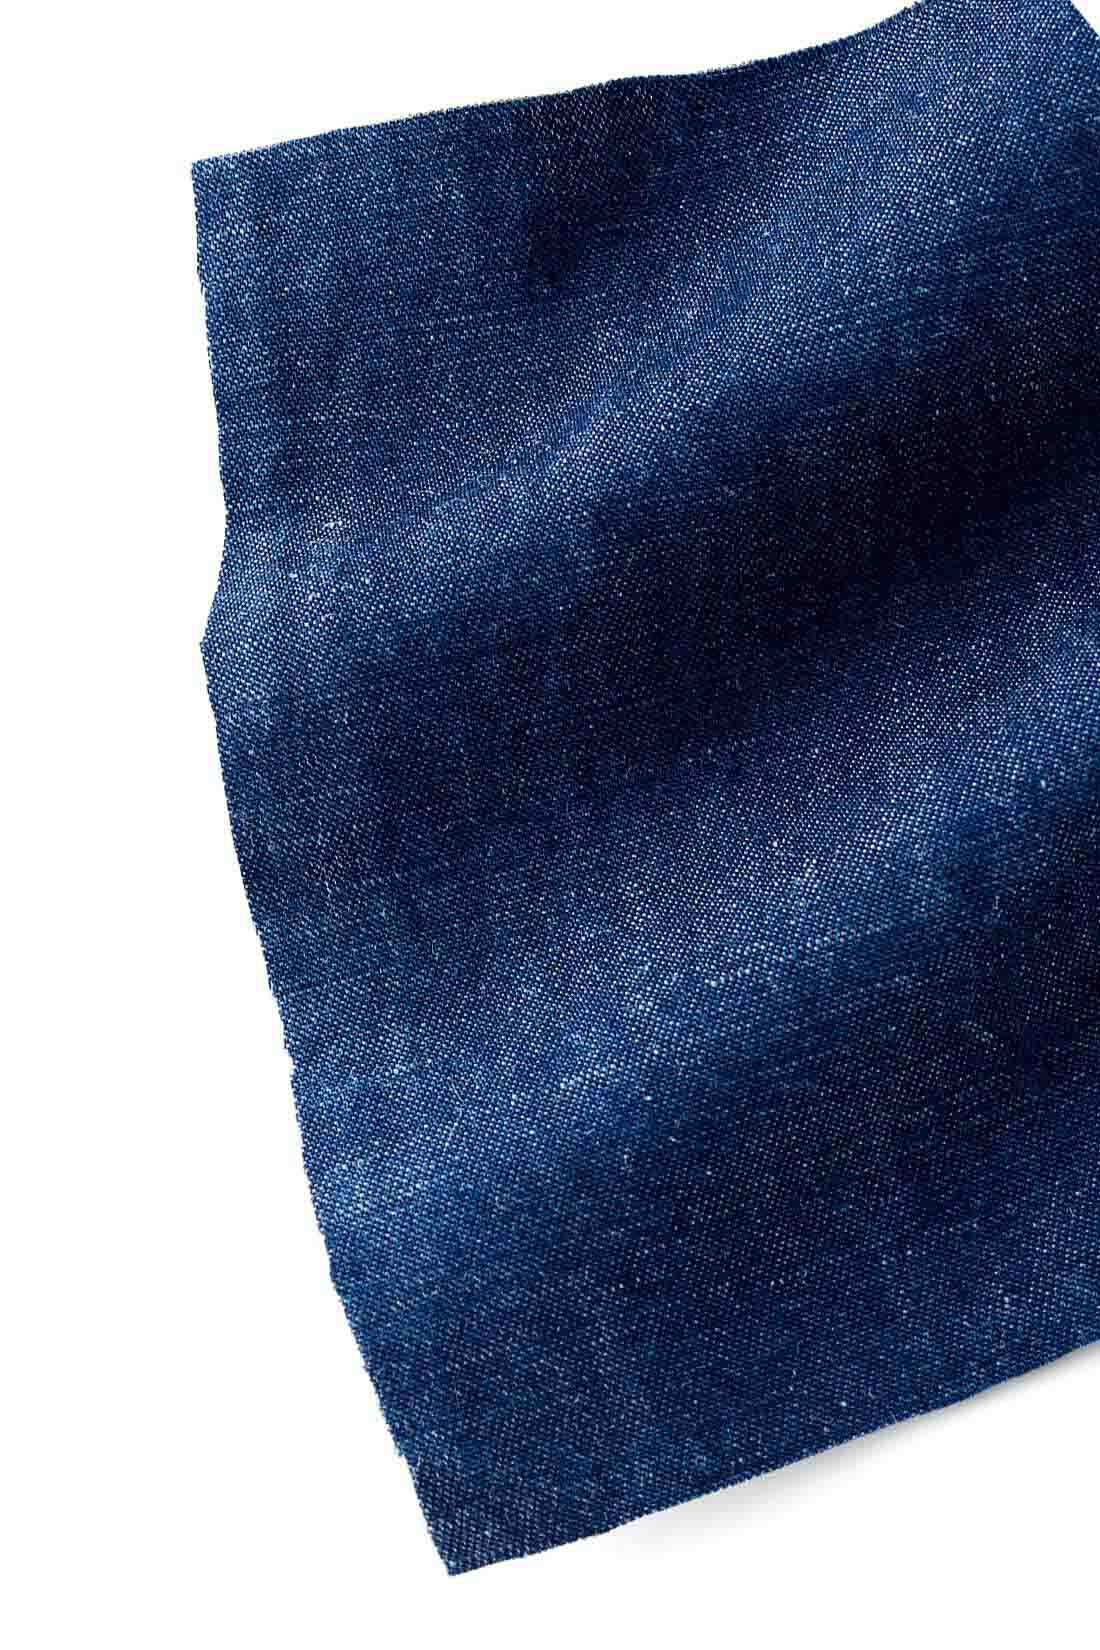 MEDE19F|MEDE19F　コットンリネンデニム素材のブザムシャツコート〈ブルー〉|リネン混特有の光沢とシャリ感、フシが見られる、シャツデニム生地。